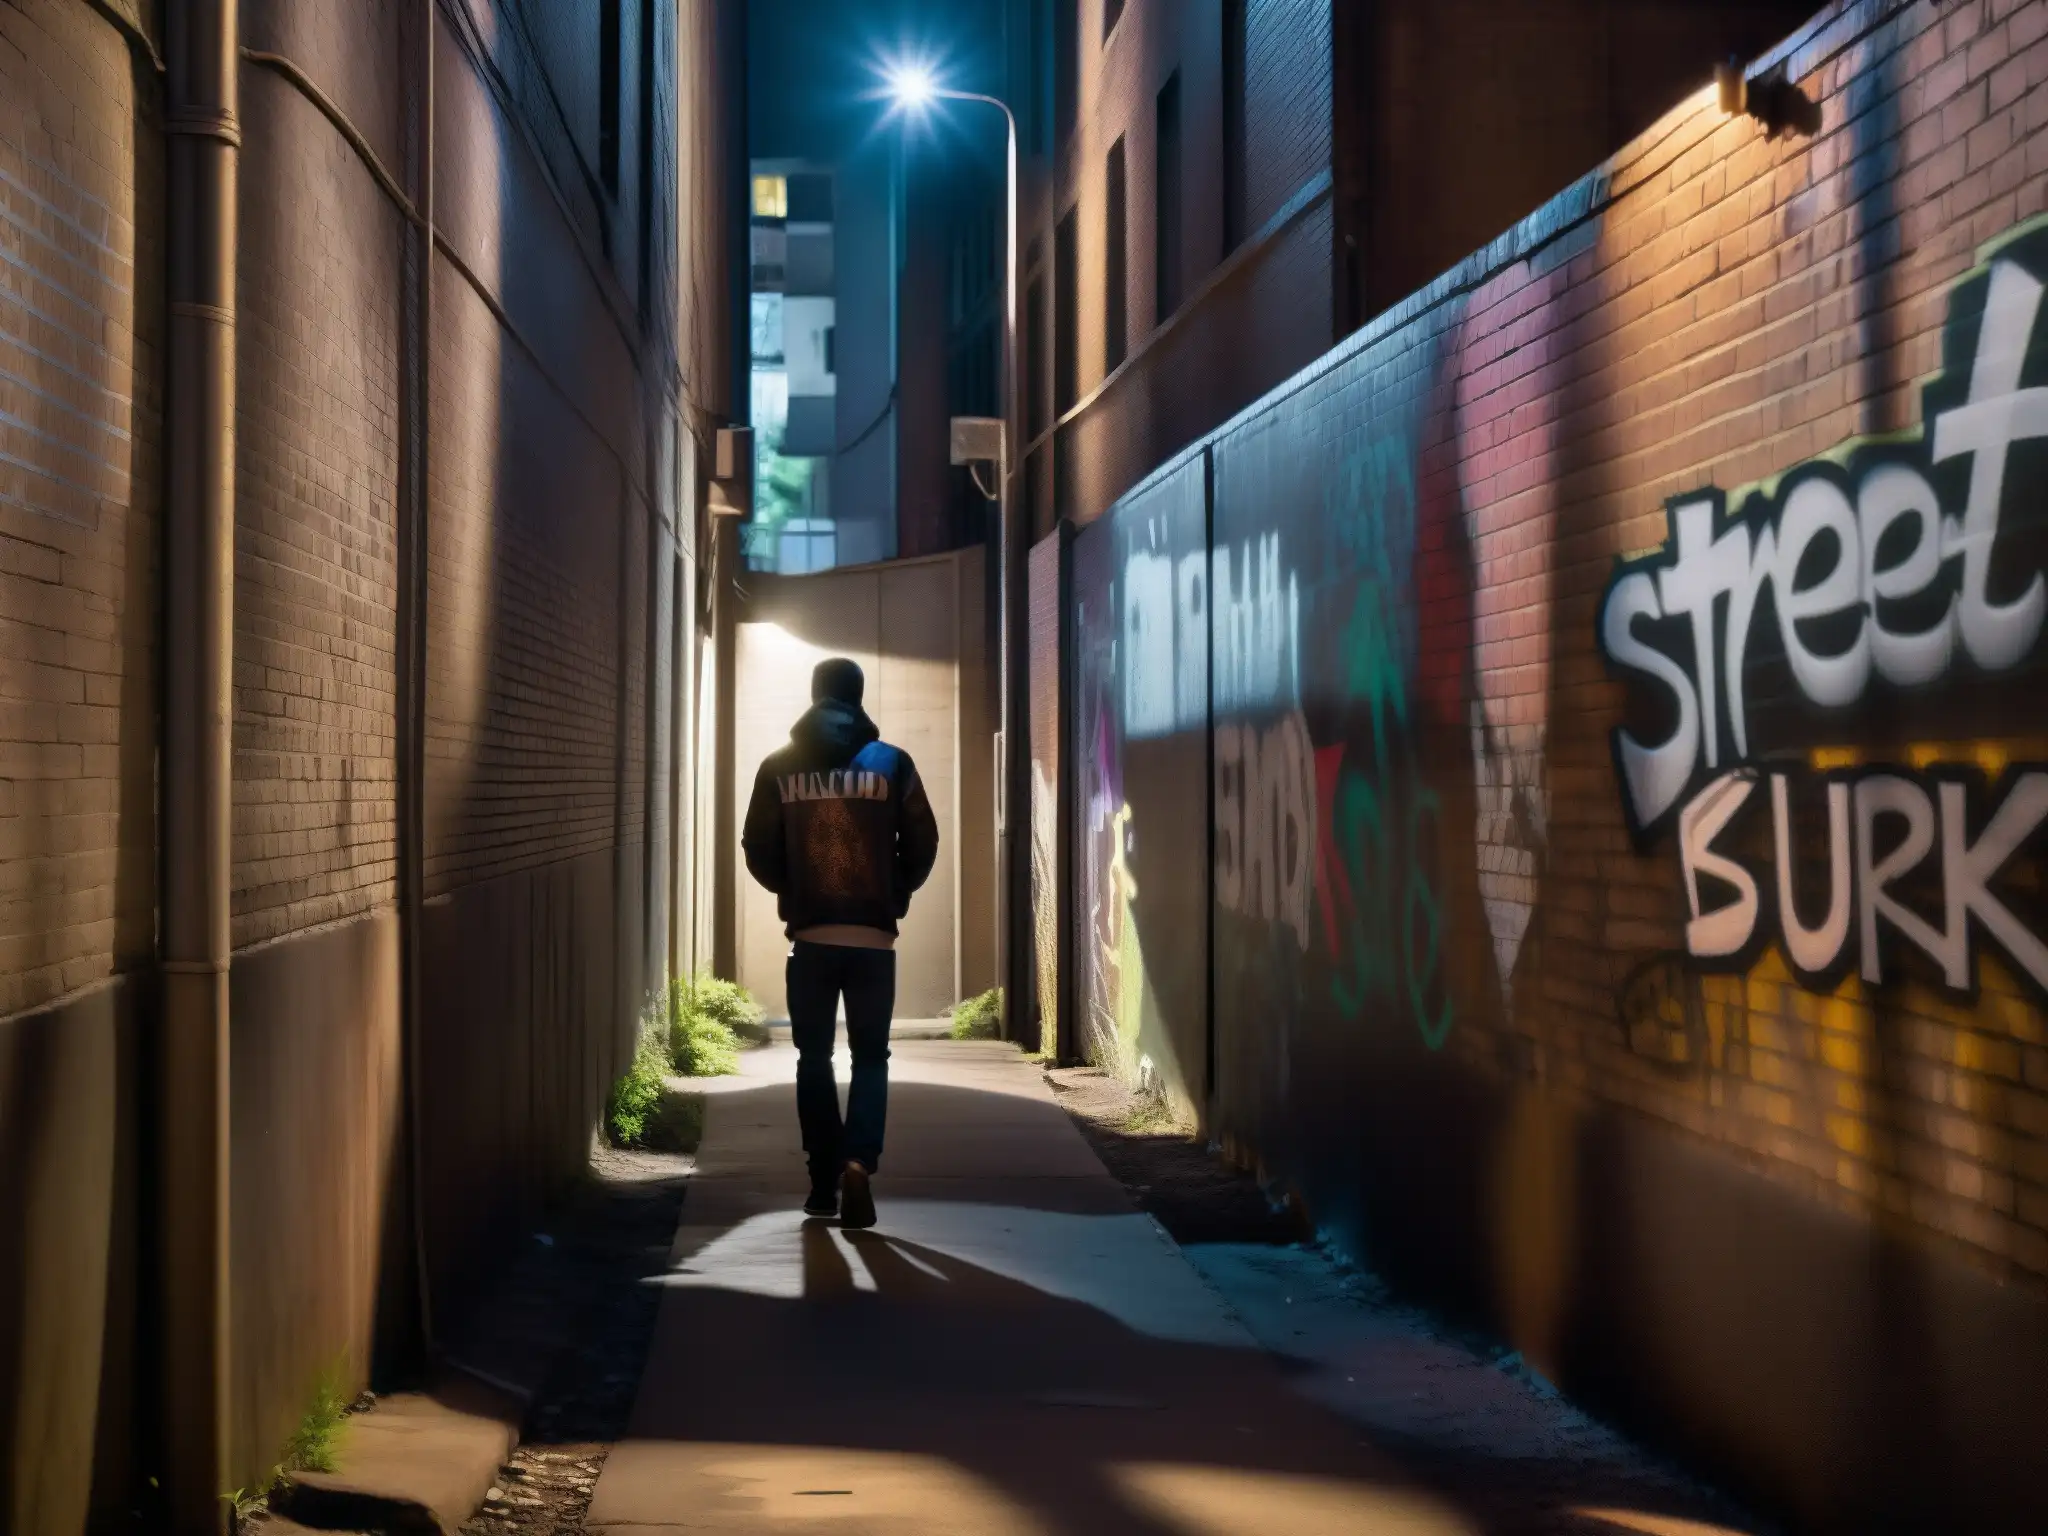 Un callejón sombrío con paredes cubiertas de grafiti, iluminado solo por la luz parpadeante de una farola rota